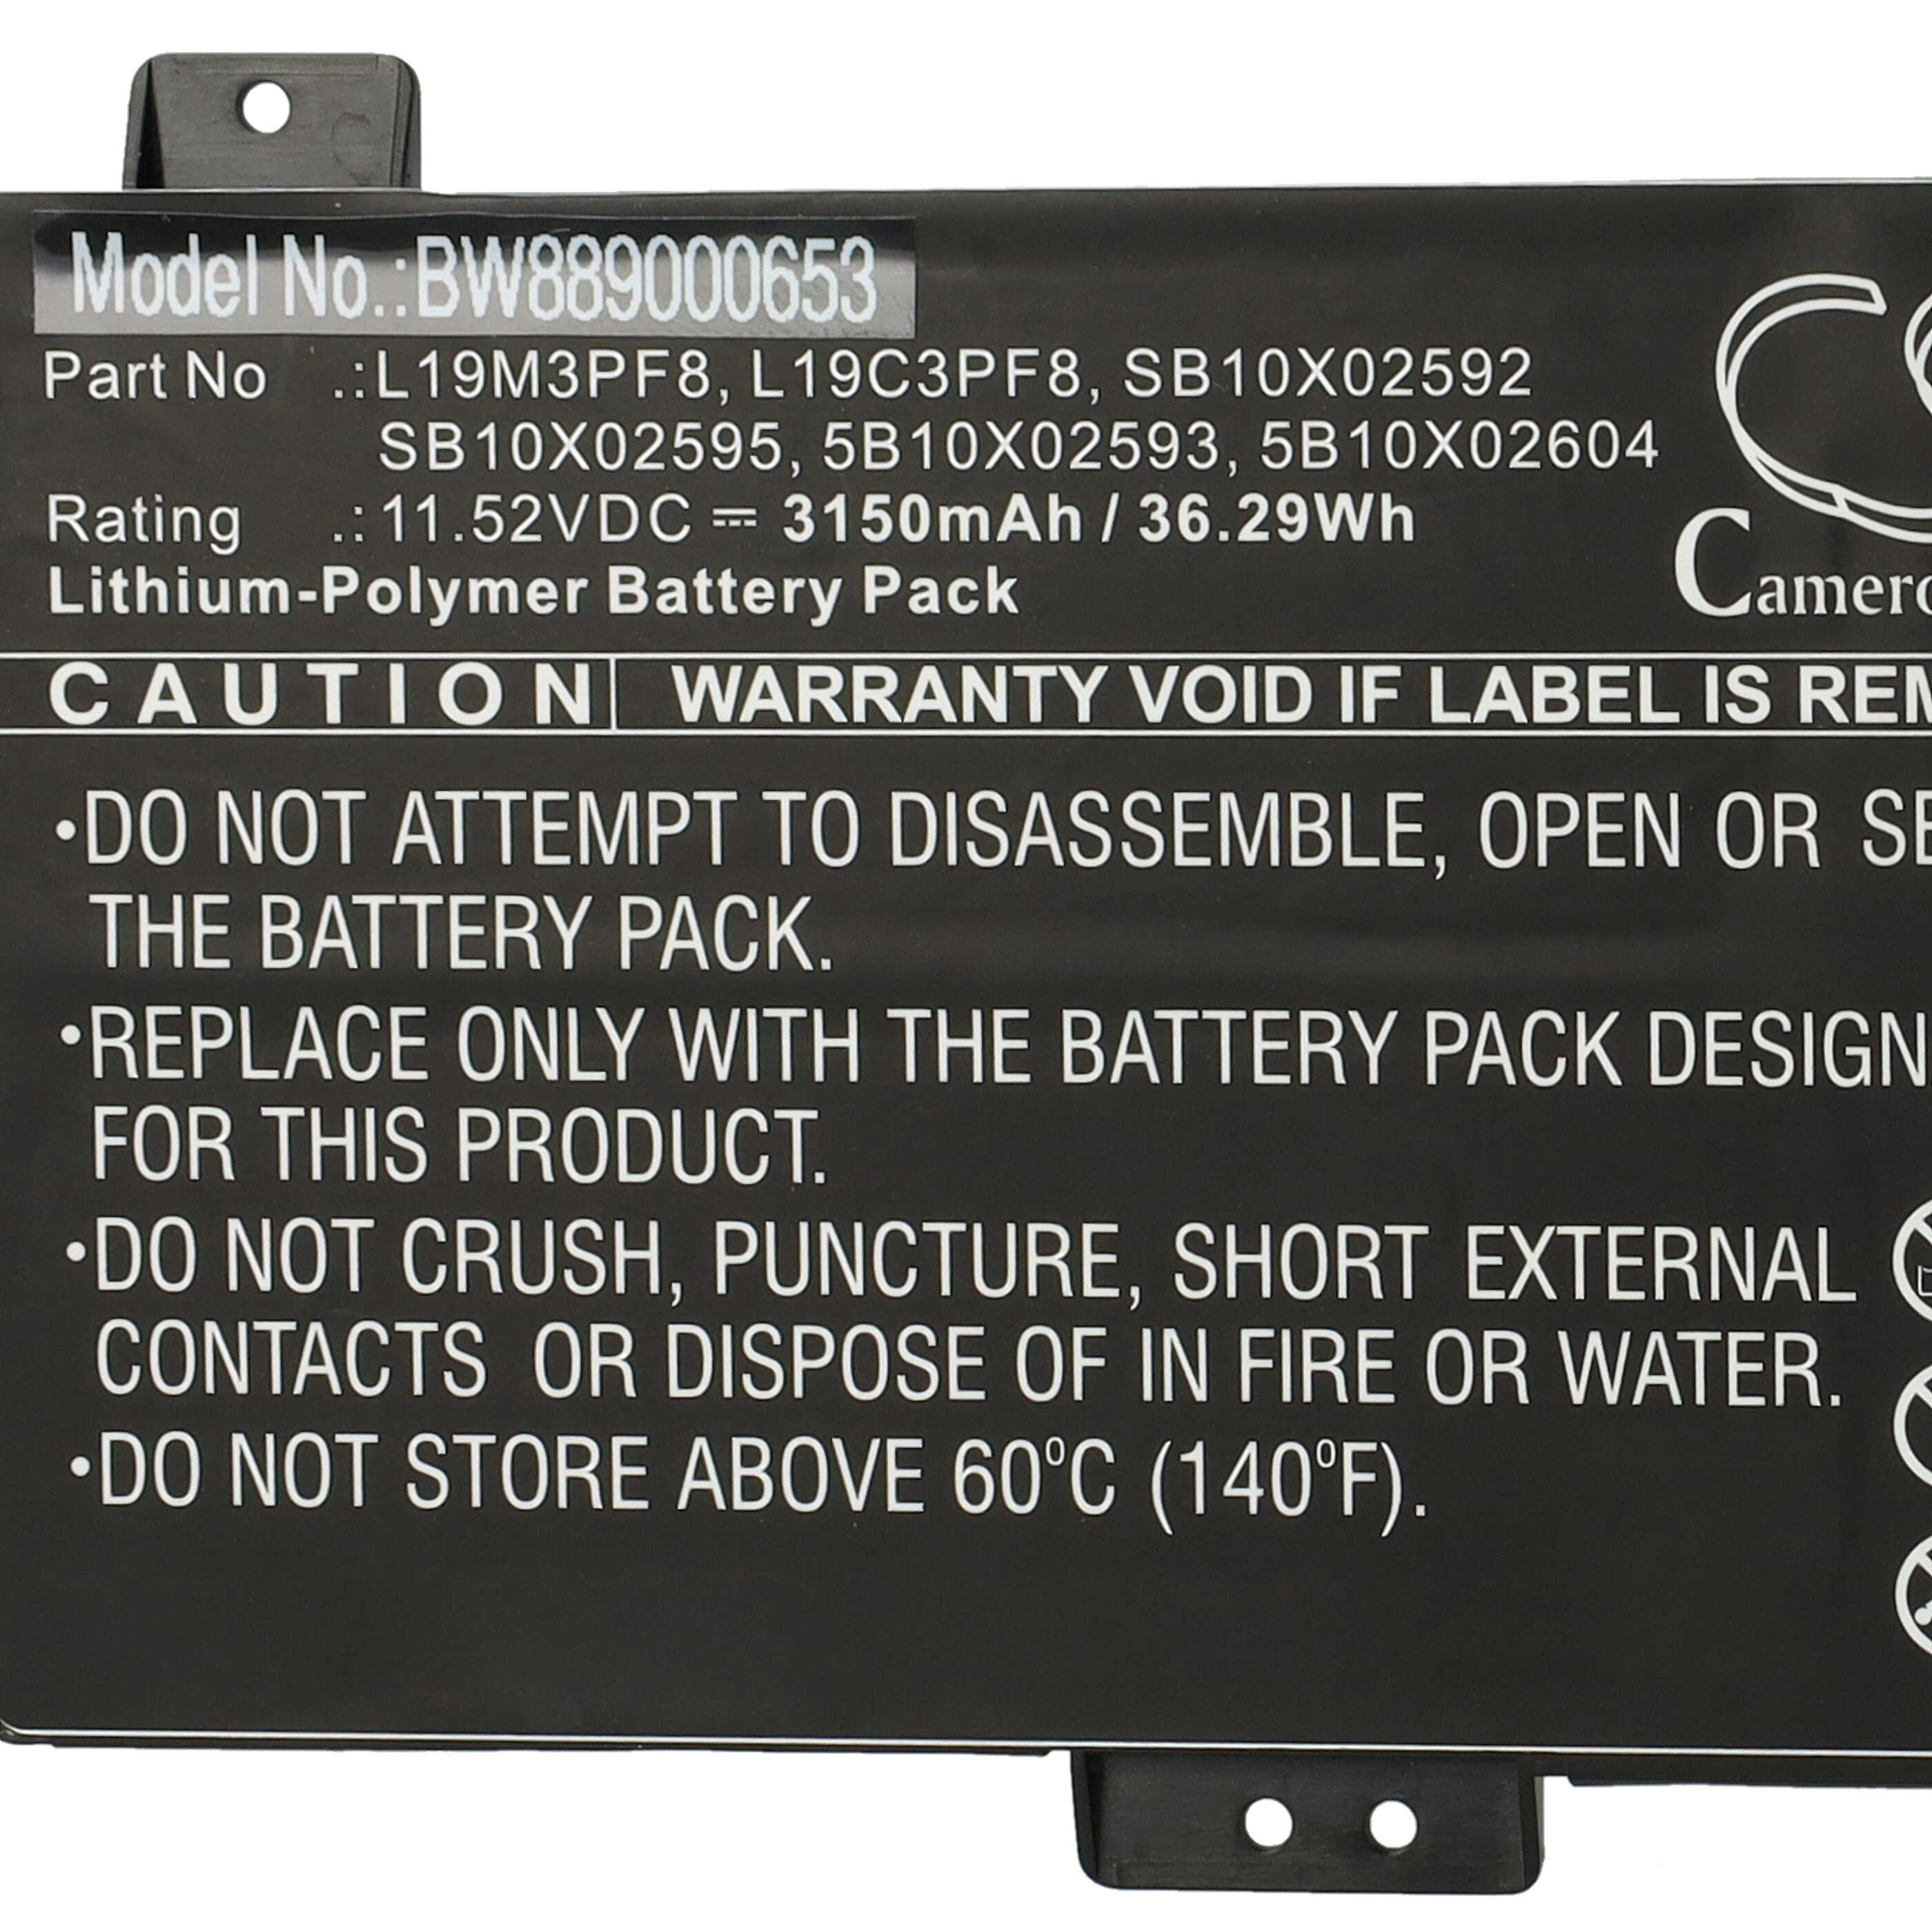 Batteria sostituisce Lenovo 5B10X02593, 5B10X02604, L19C3PF8 per notebook Lenovo - 3150mAh 11,52V Li-Poly